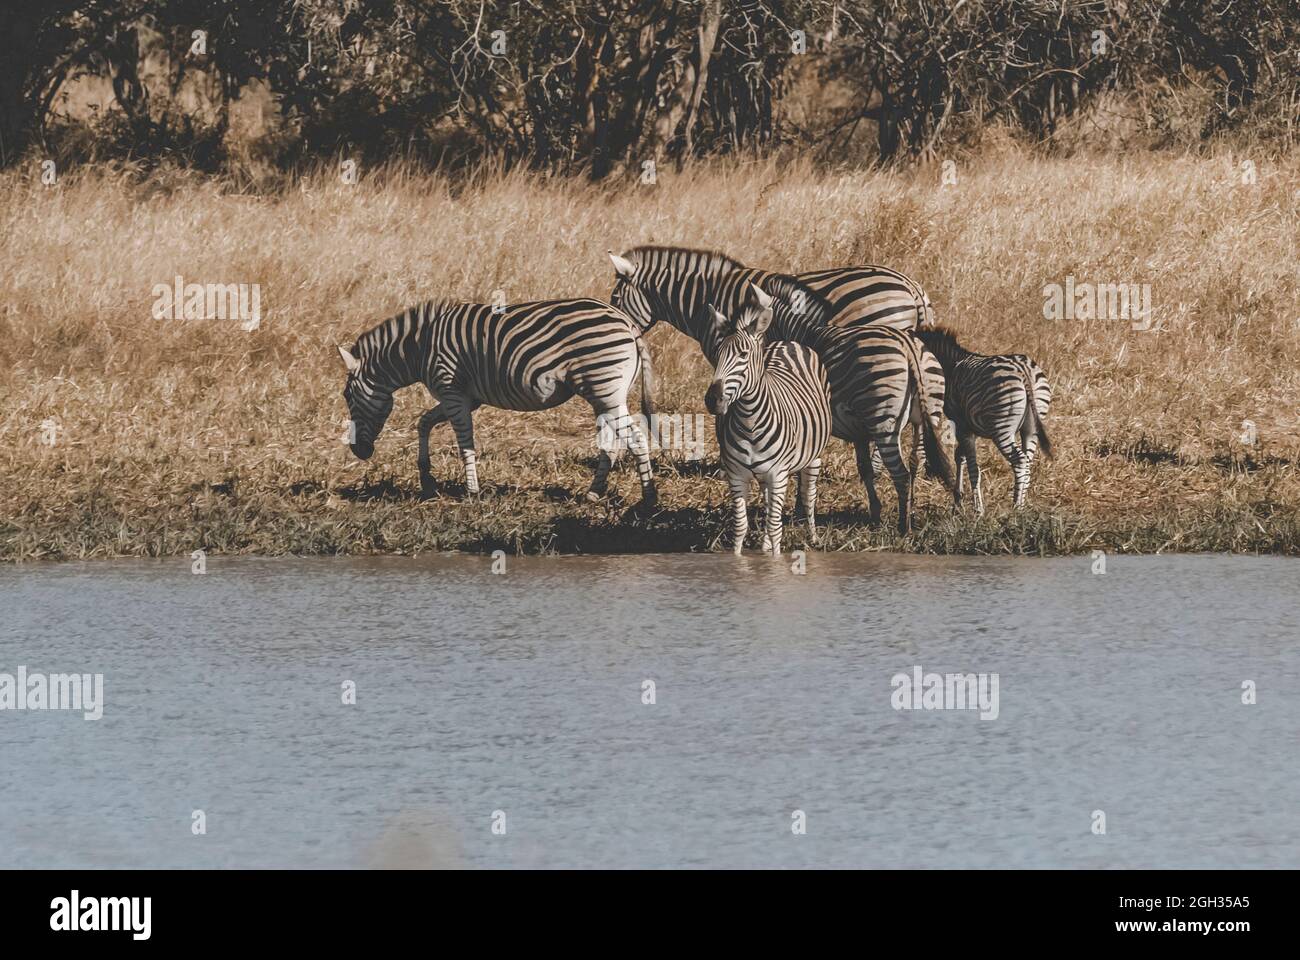 Zèbre africain dans l'environnement de sabannah, Parc national Kruger, Afrique du Sud. Banque D'Images